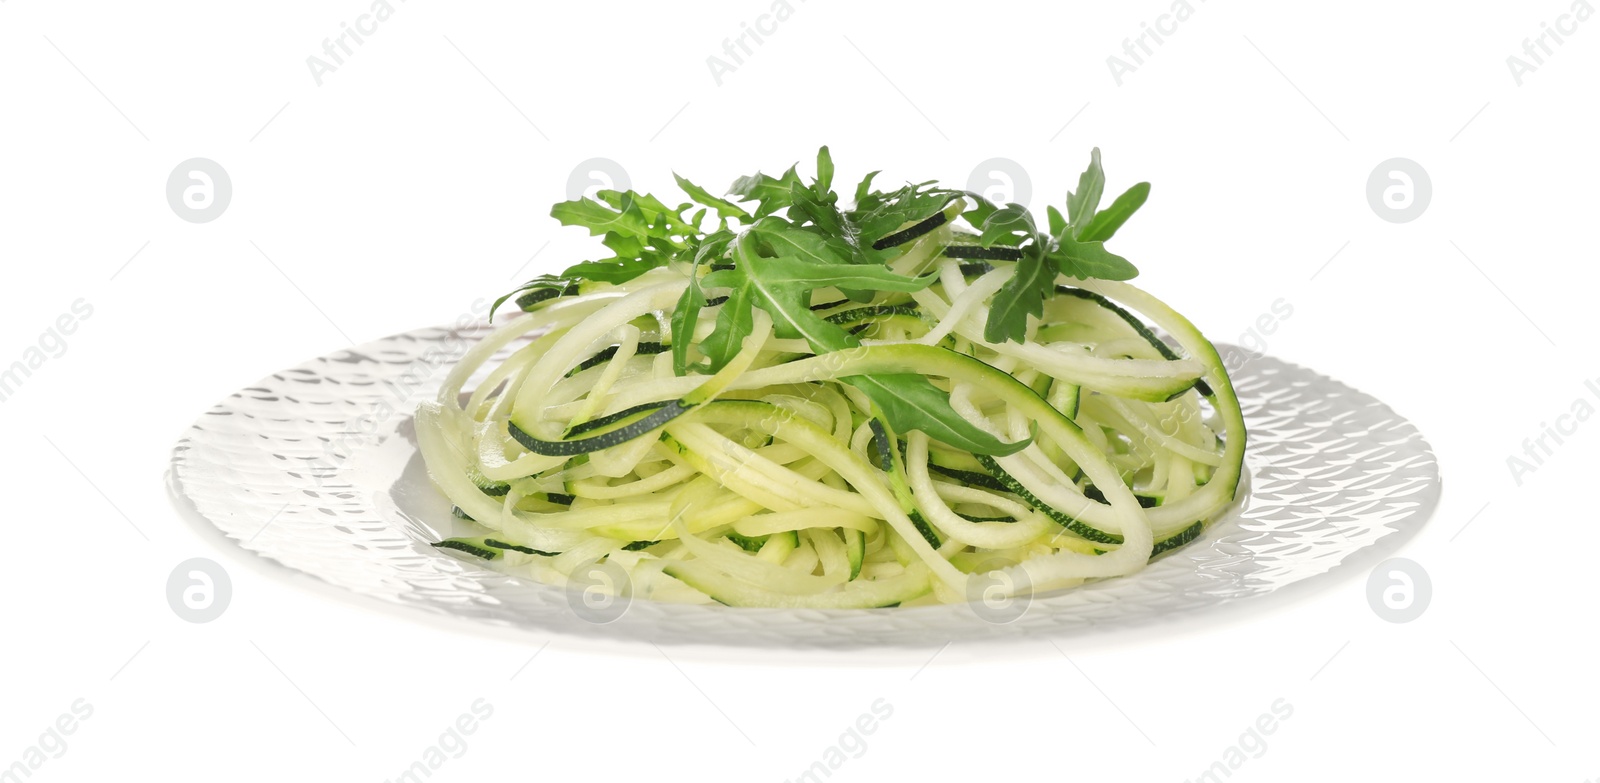 Photo of Tasty zucchini pasta with arugula isolated on white